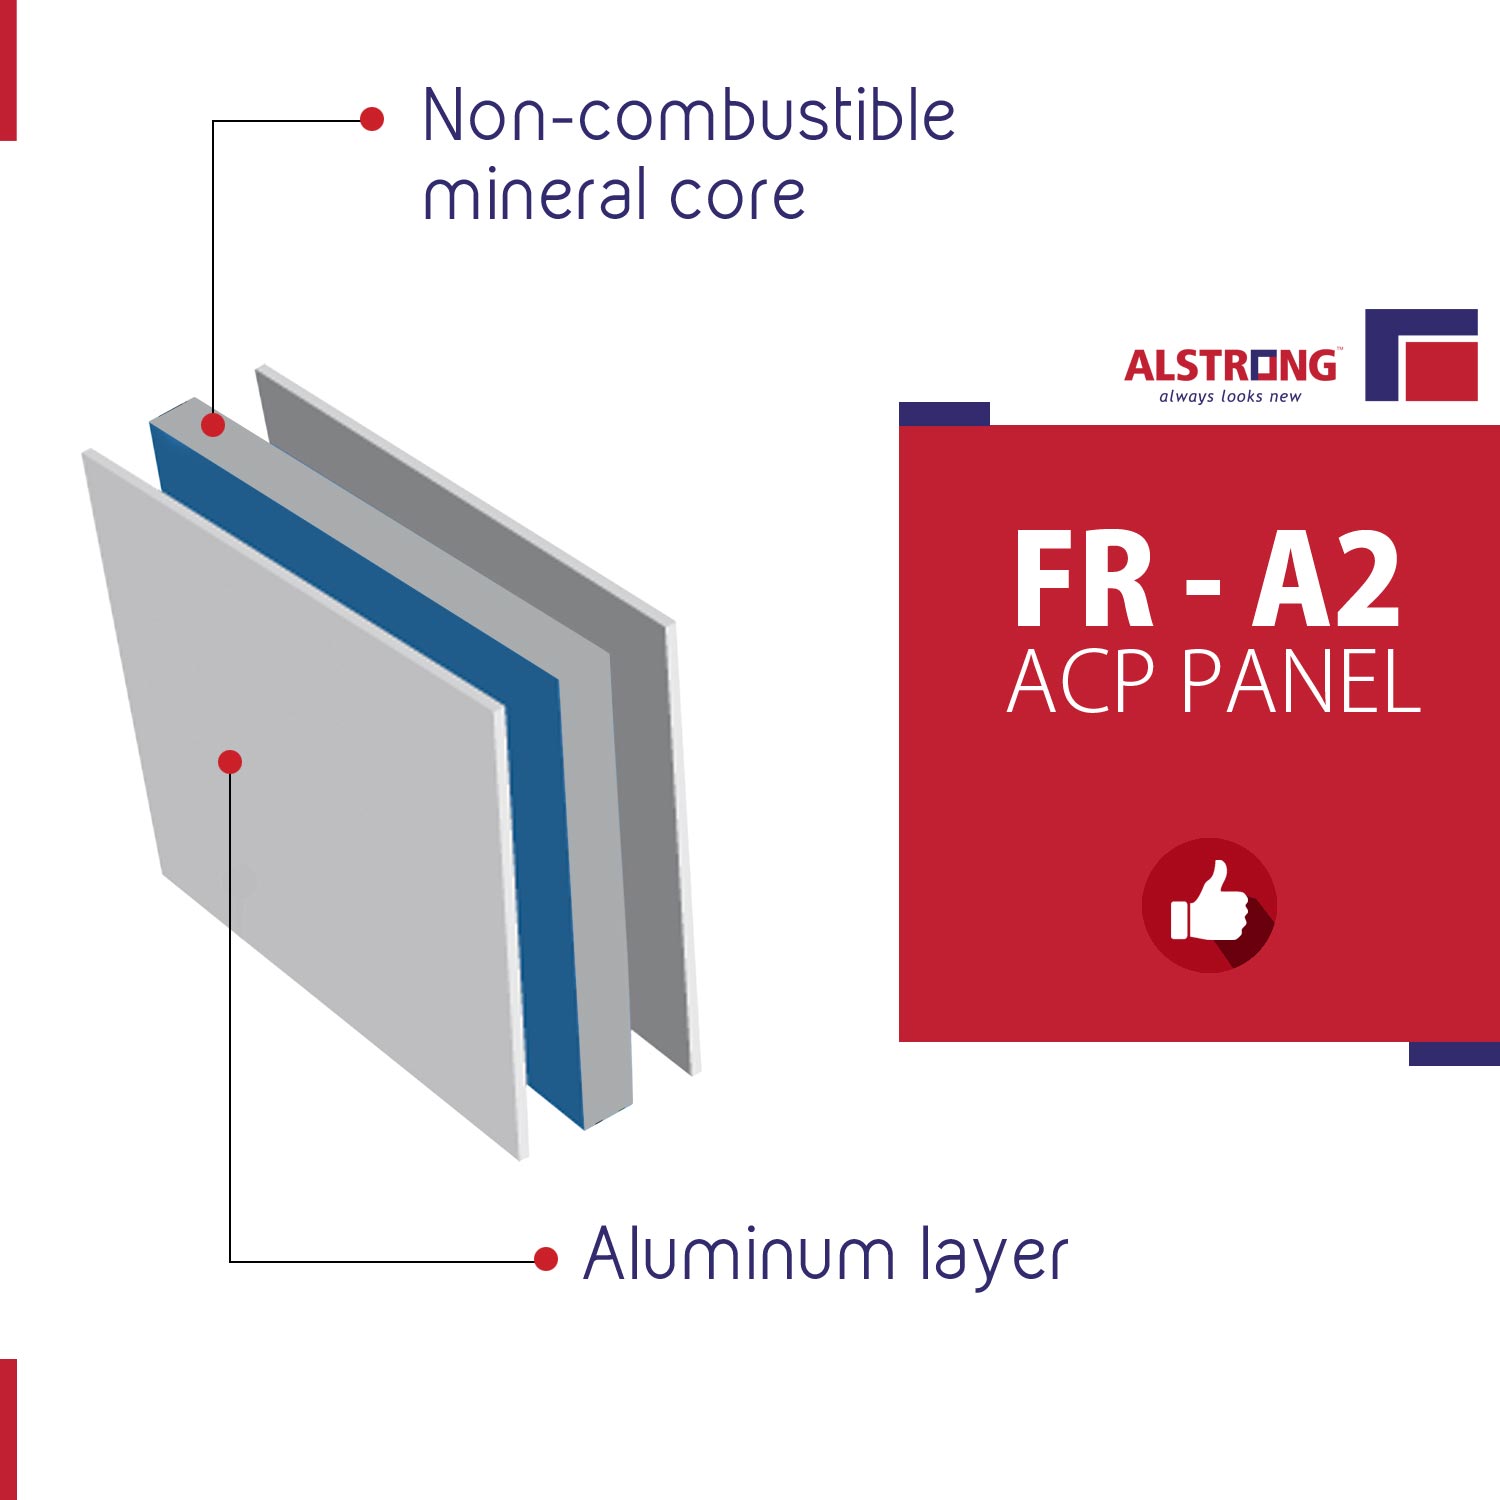 alstrong-fr-a2-aluminum-panels-dont-catch-fire